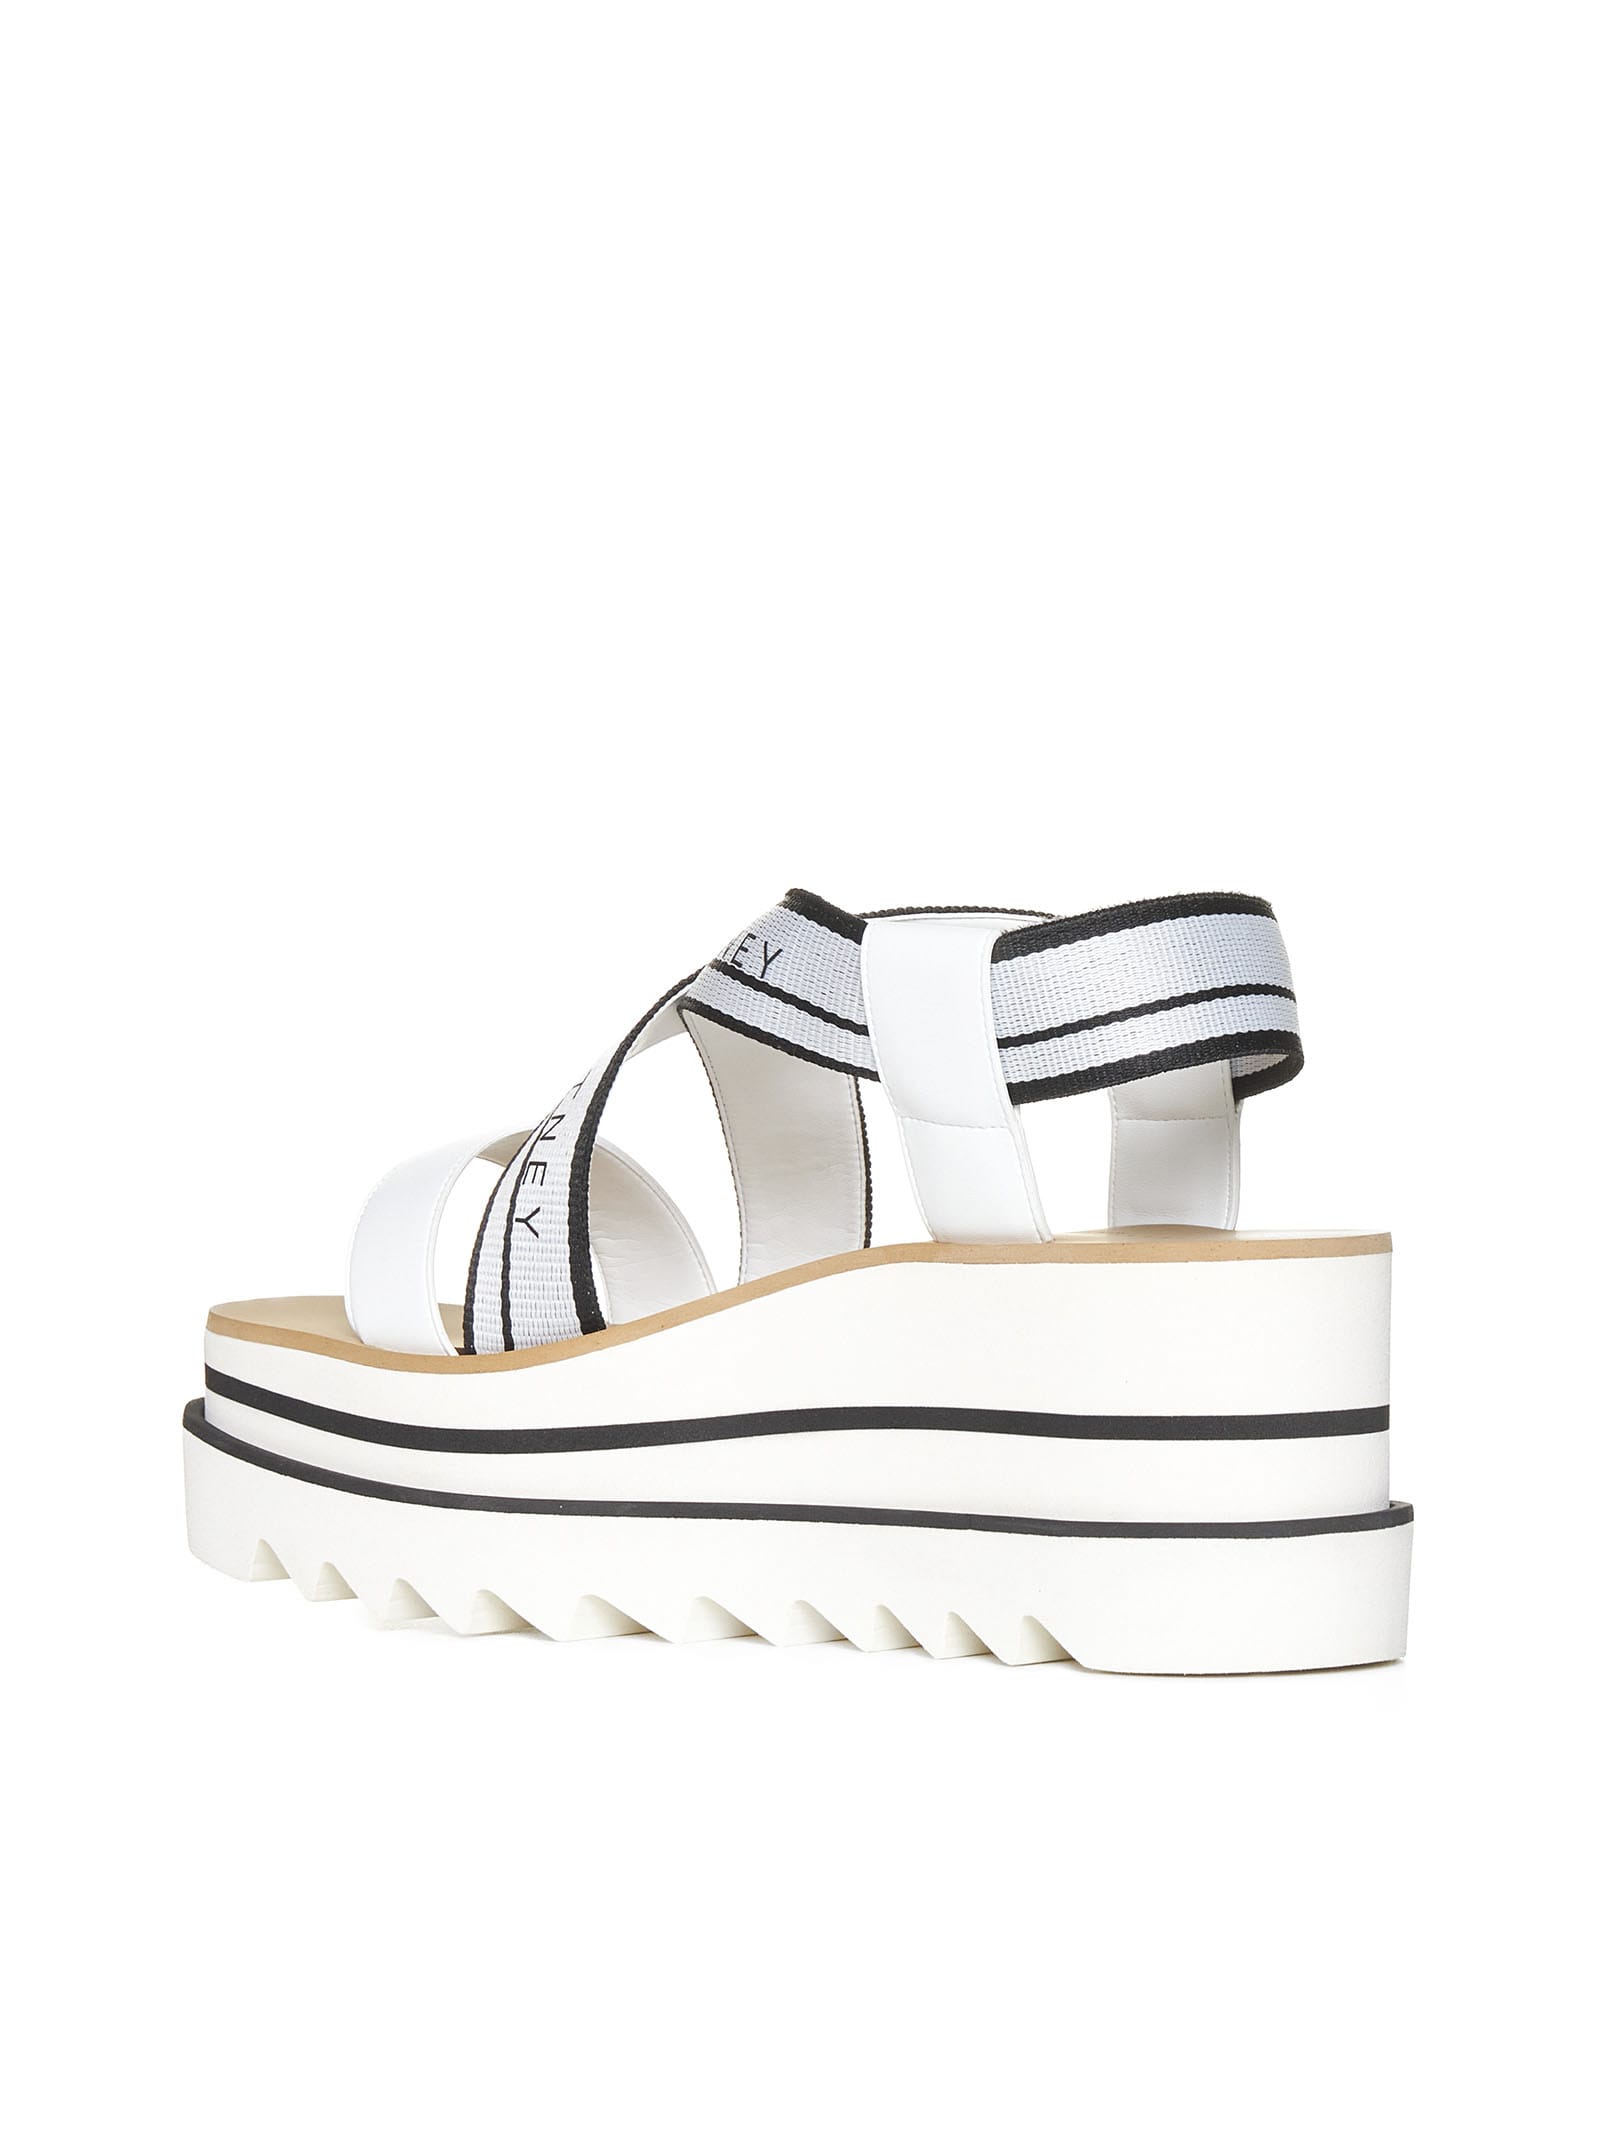 Shop Stella Mccartney Sandals In White/black